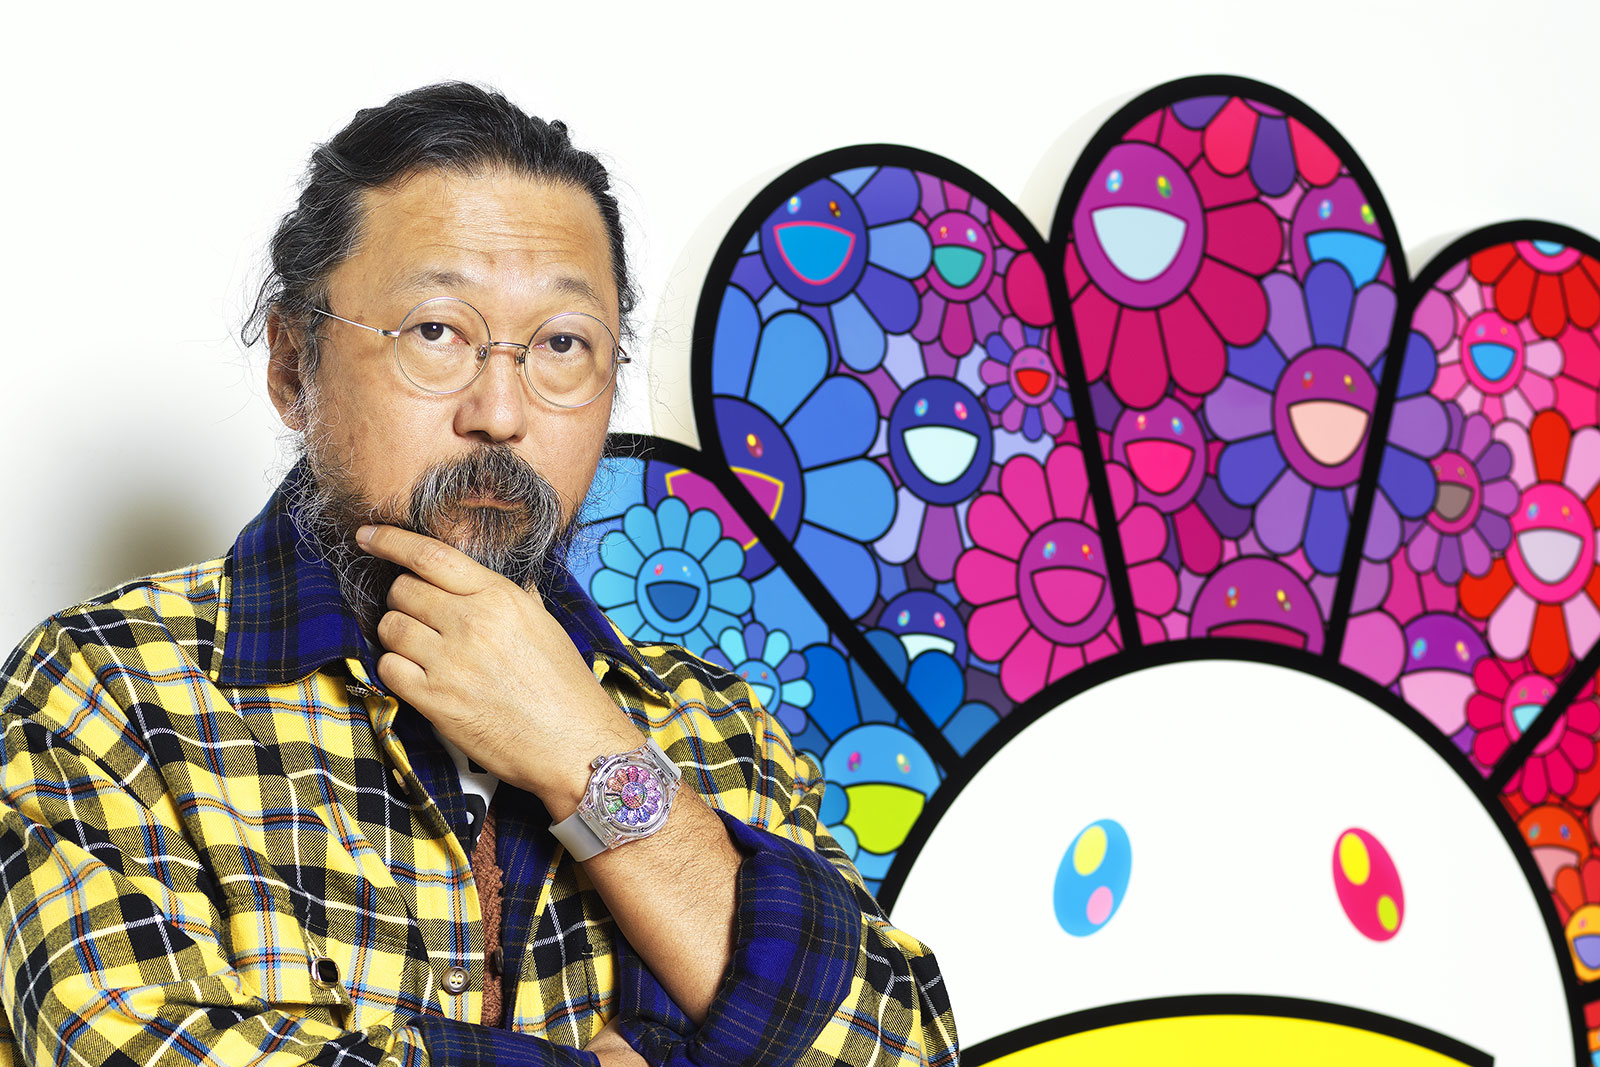 Hands-On: Hublot Classic Fusion Takashi Murakami Sapphire Rainbow Watch